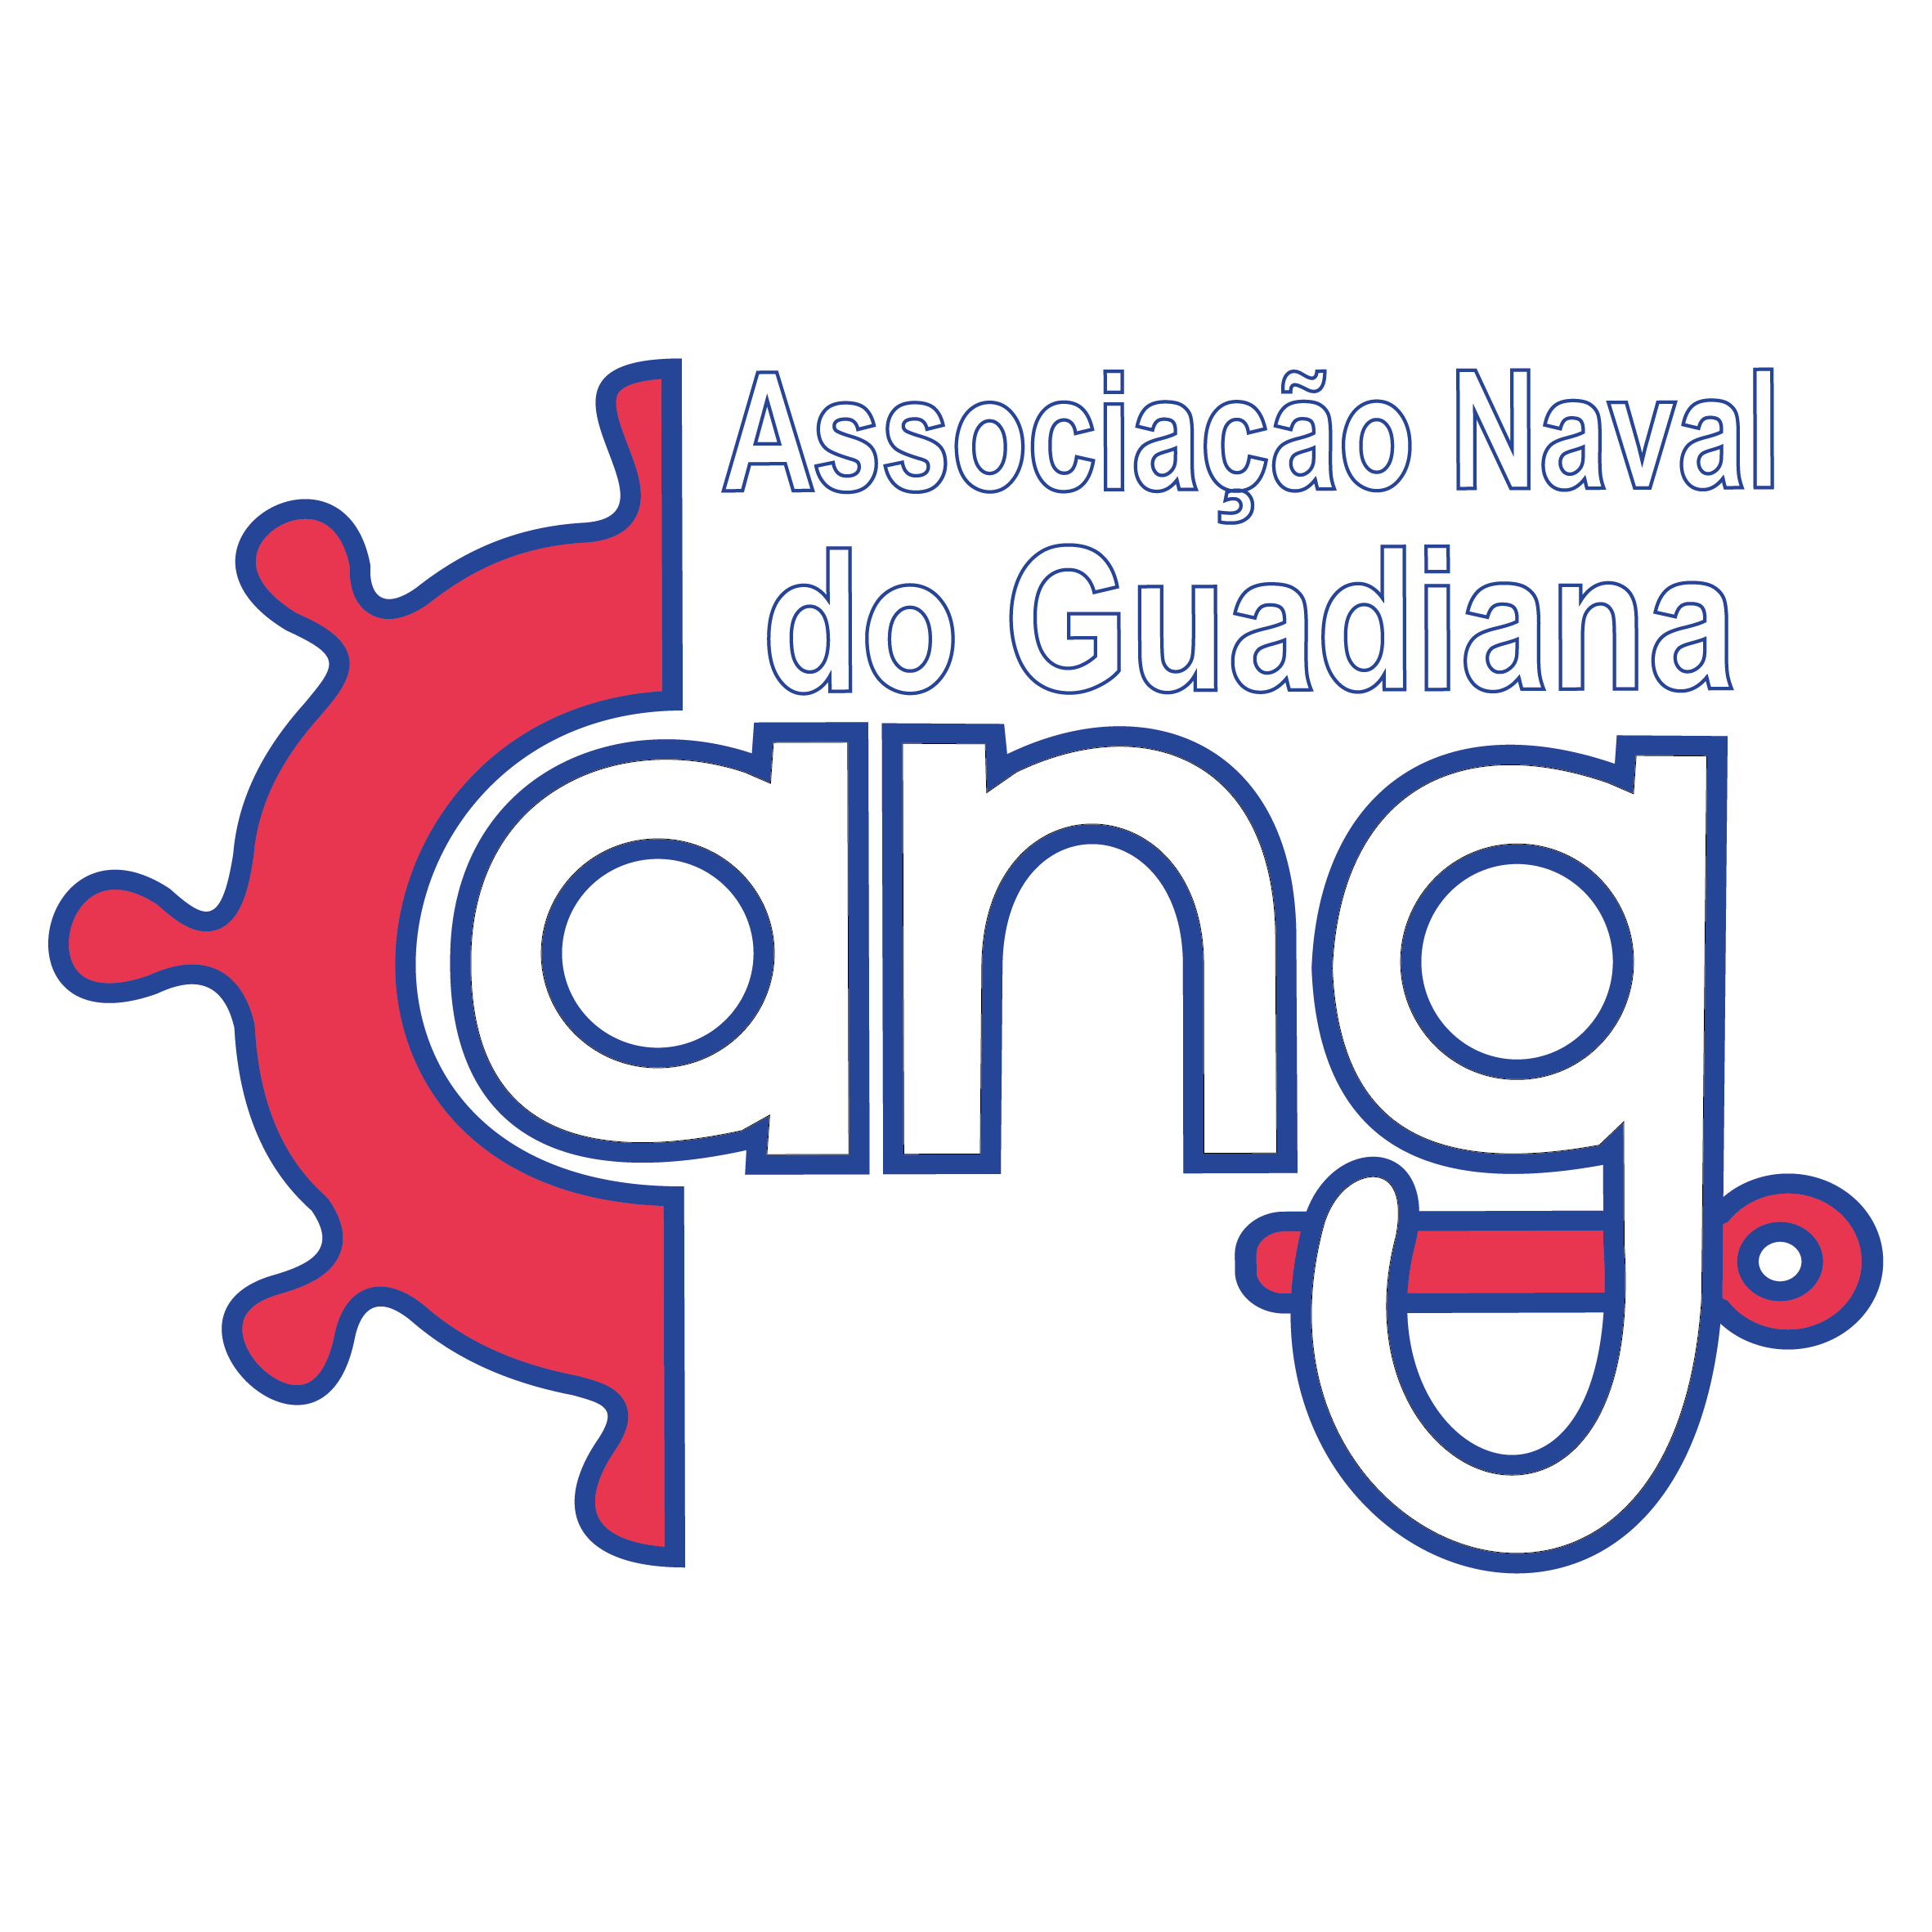 Associação Naval do Guadiana